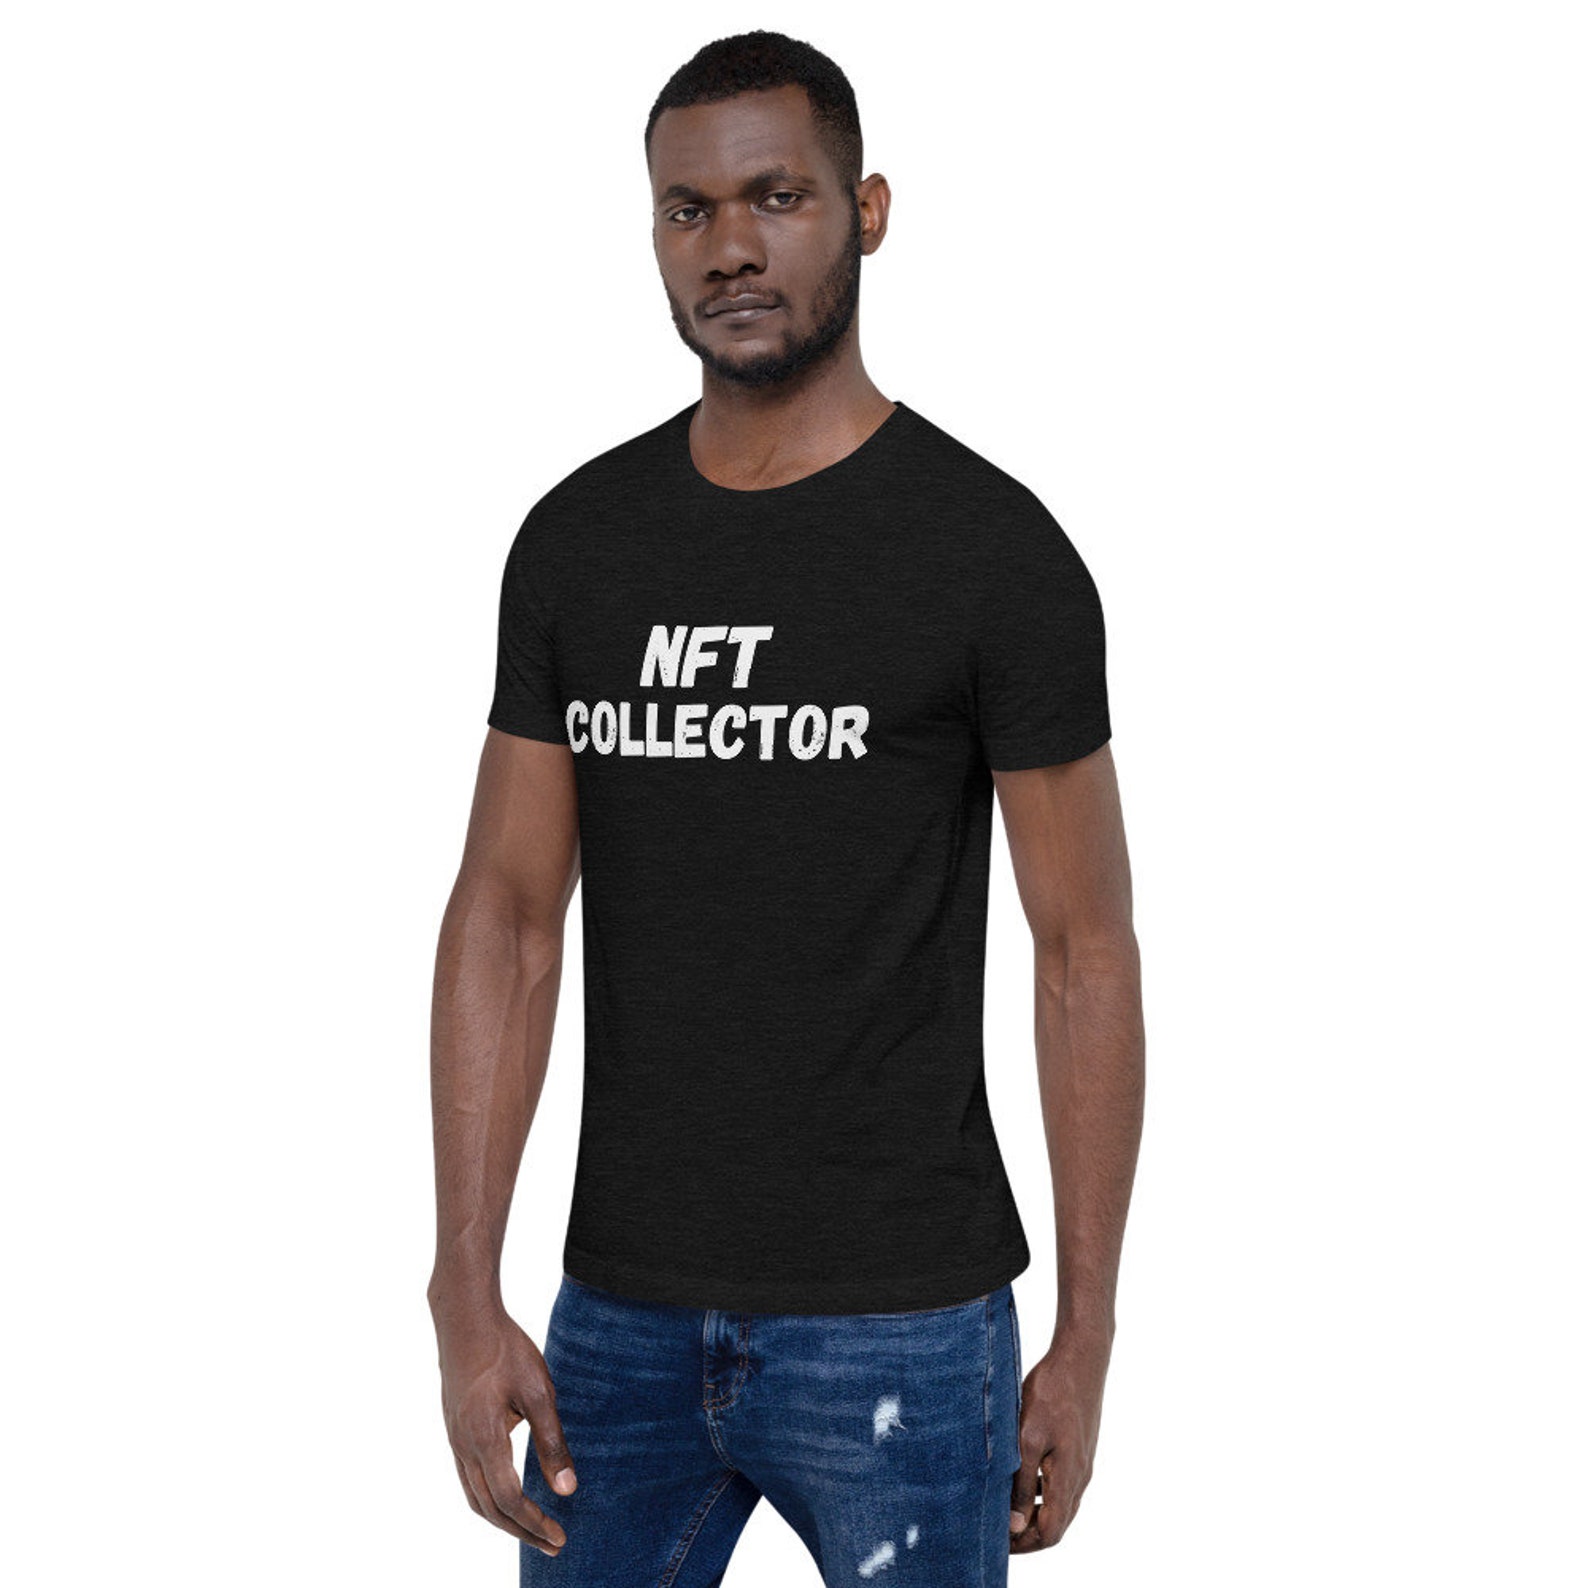 NFT Collector Premium Short-sleeve Unisex T-shirt Crypto - Etsy UK